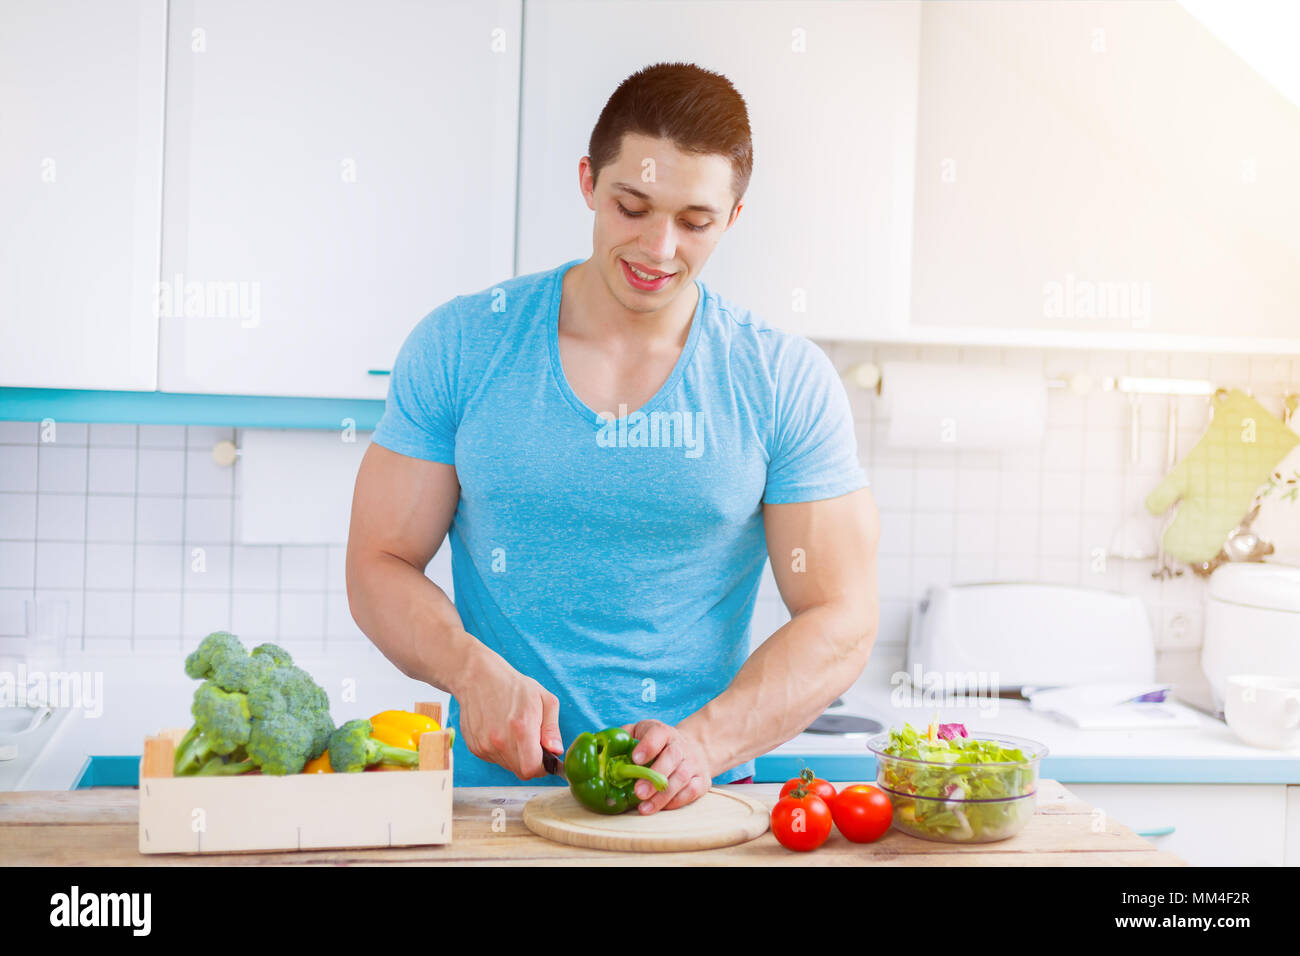 La preparazione di alimenti verdure tagliate giovane pasto salutare cucina mangiare copyspace spazio copia Foto Stock